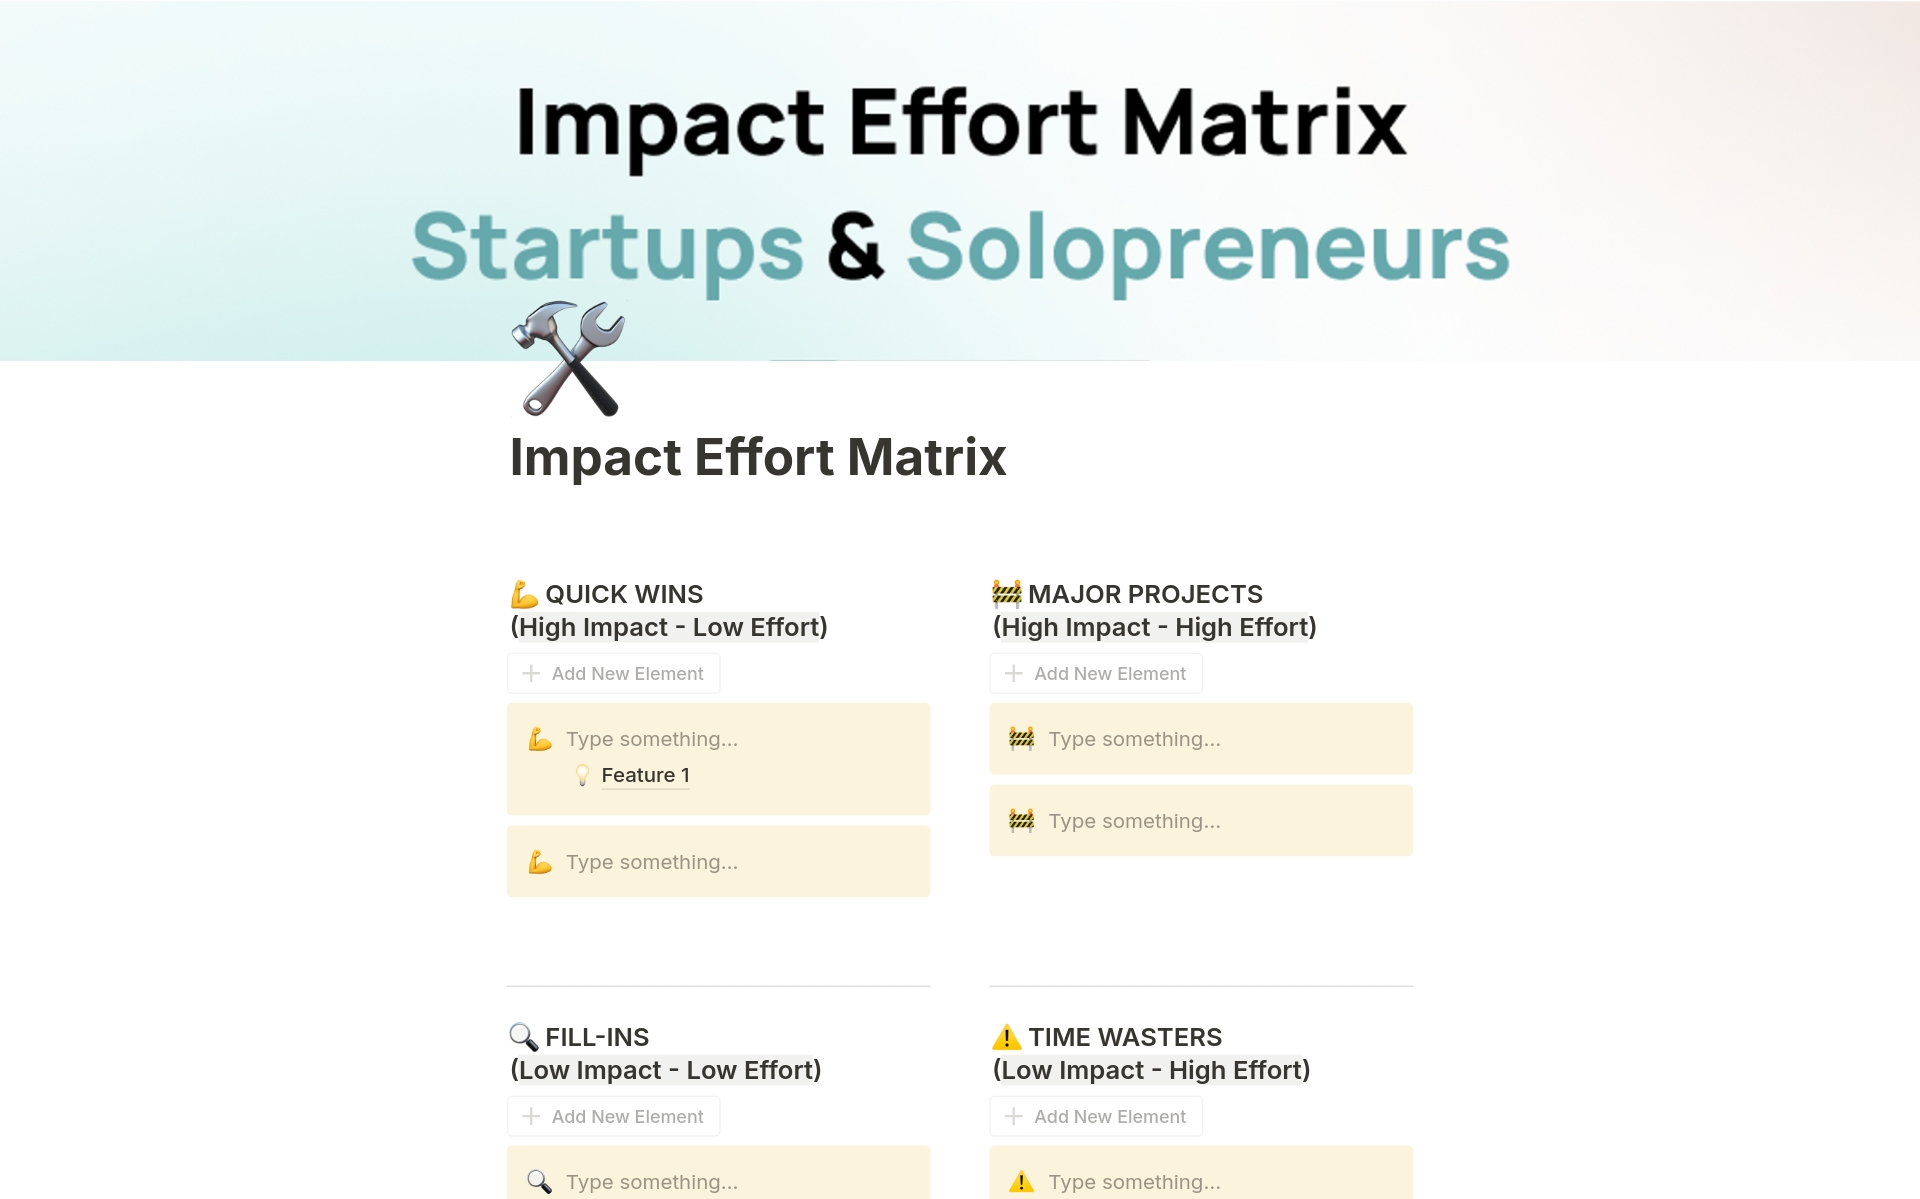 Aperçu du modèle de Impact Effort Matrix for Startups & Solopreneurs